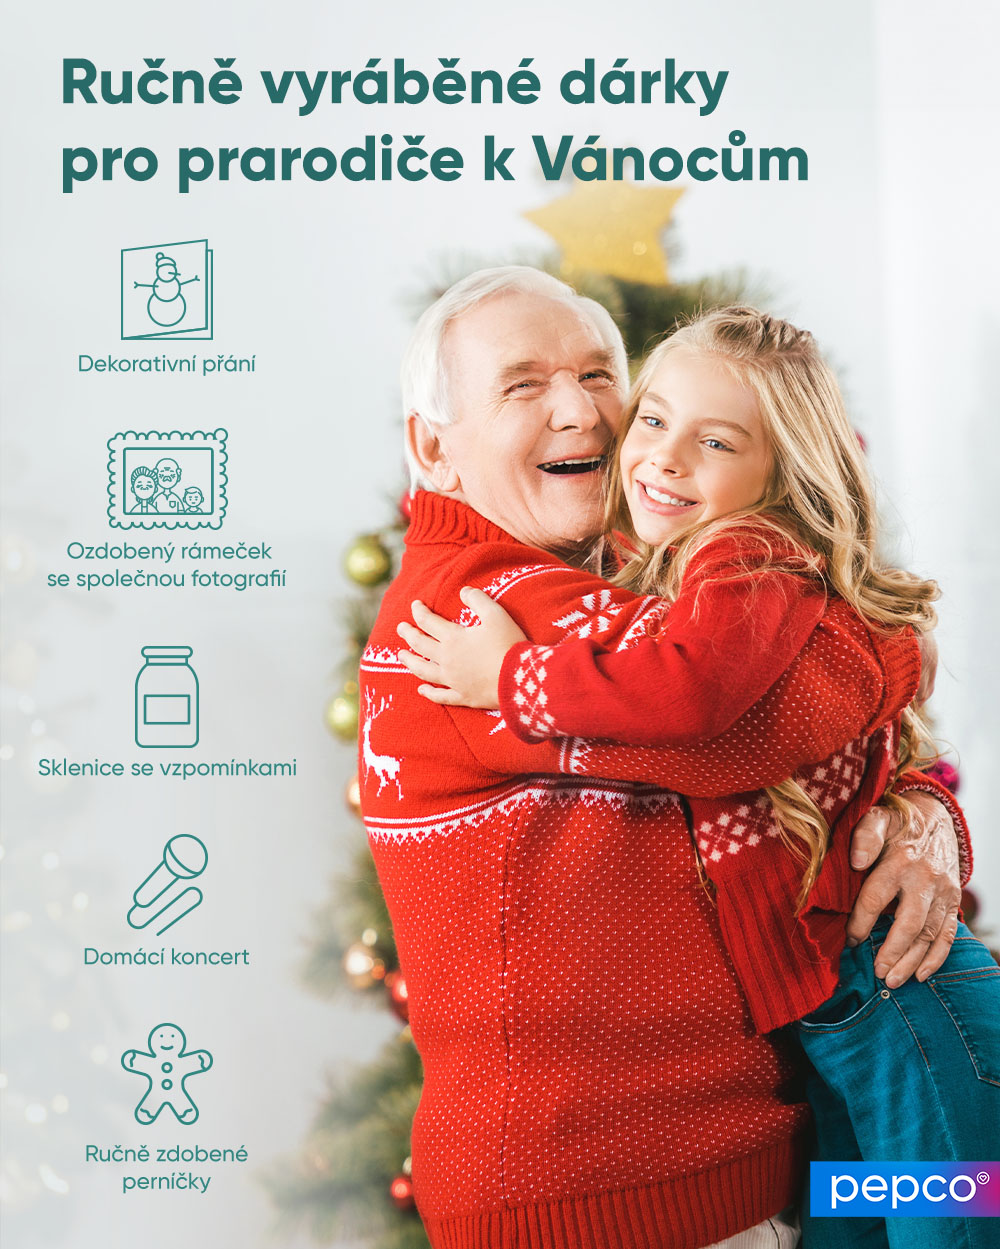 Infografika Pepco Ručně vyráběné dárky pro prarodiče k Vánocům.